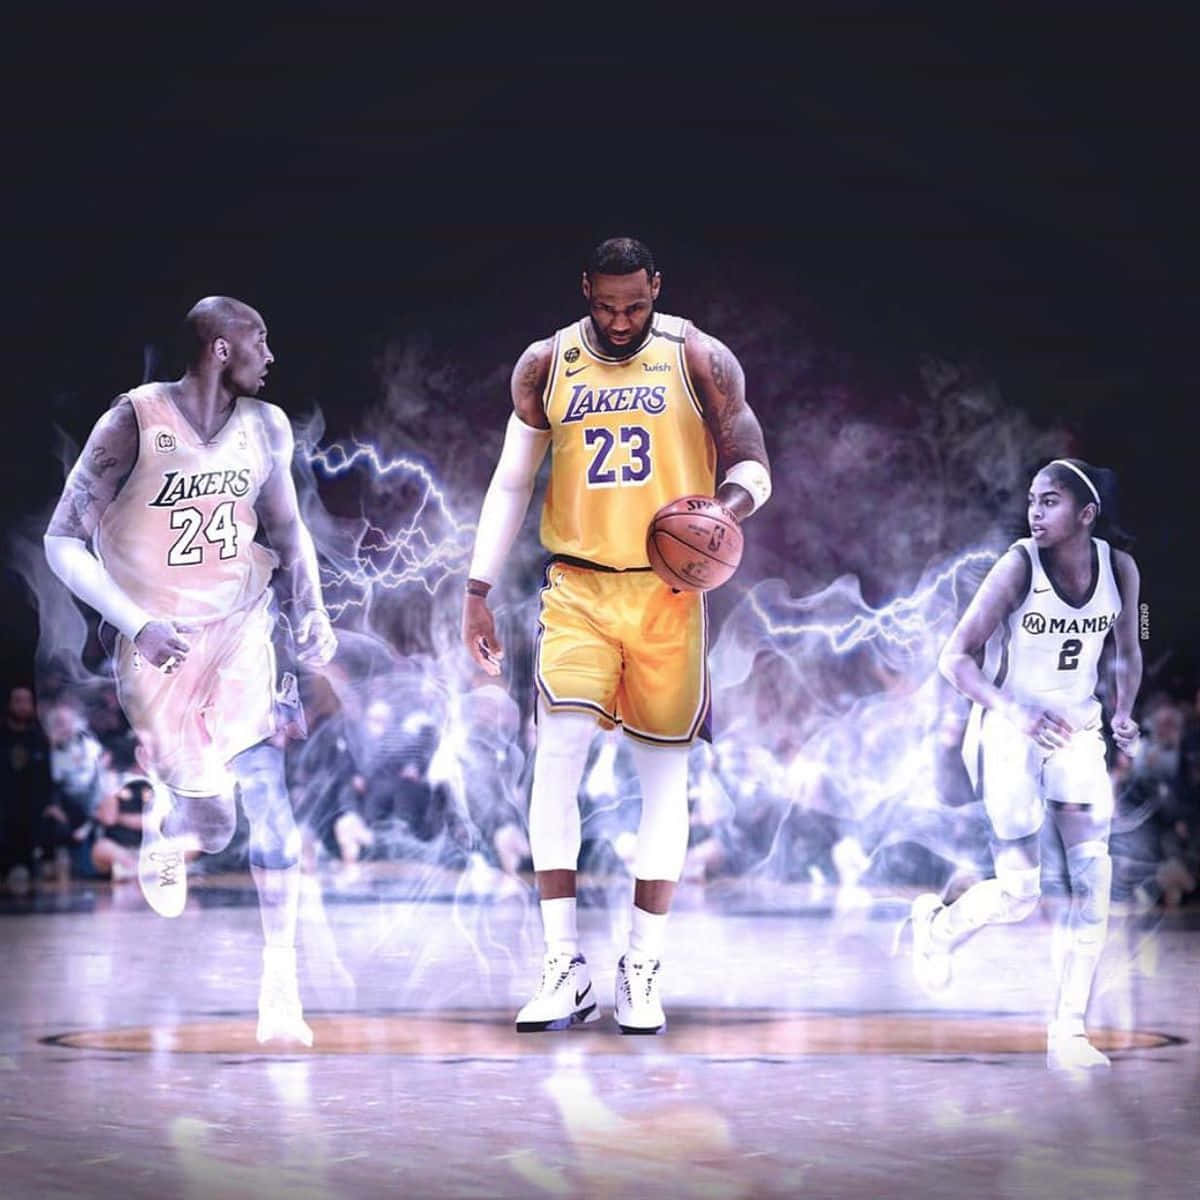 Kobe Bryant – Forever an inspiration